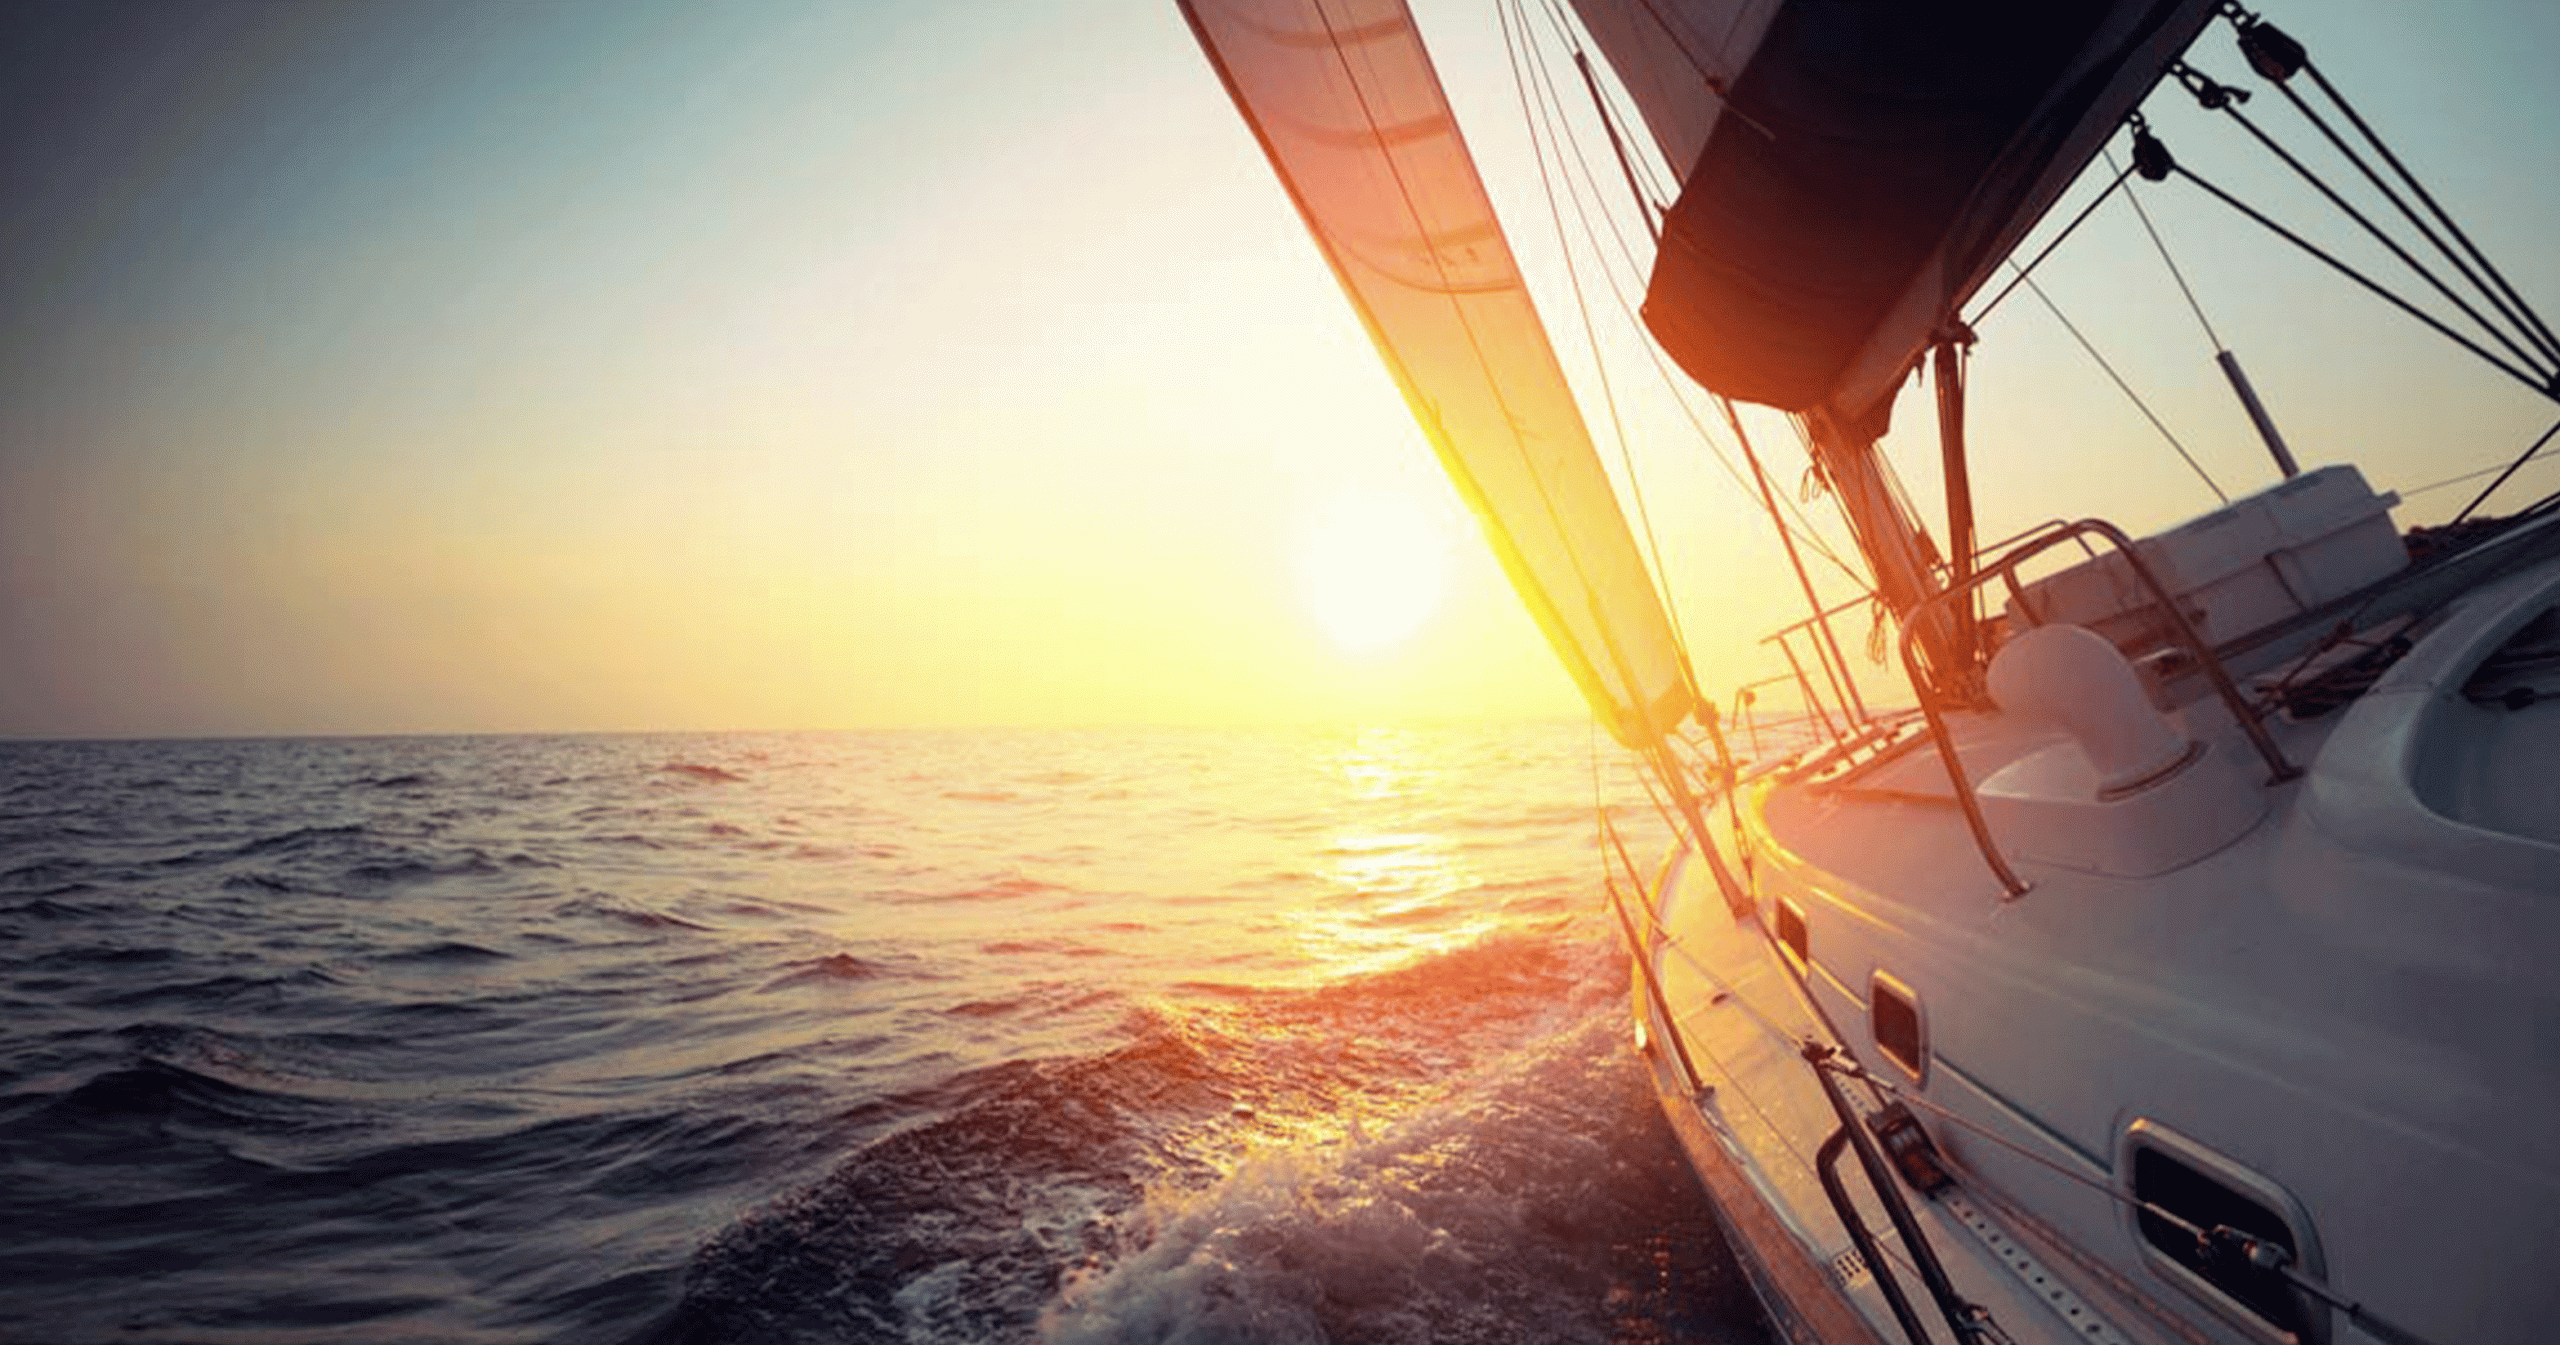 Sailboat moving towards the horizon at sunset